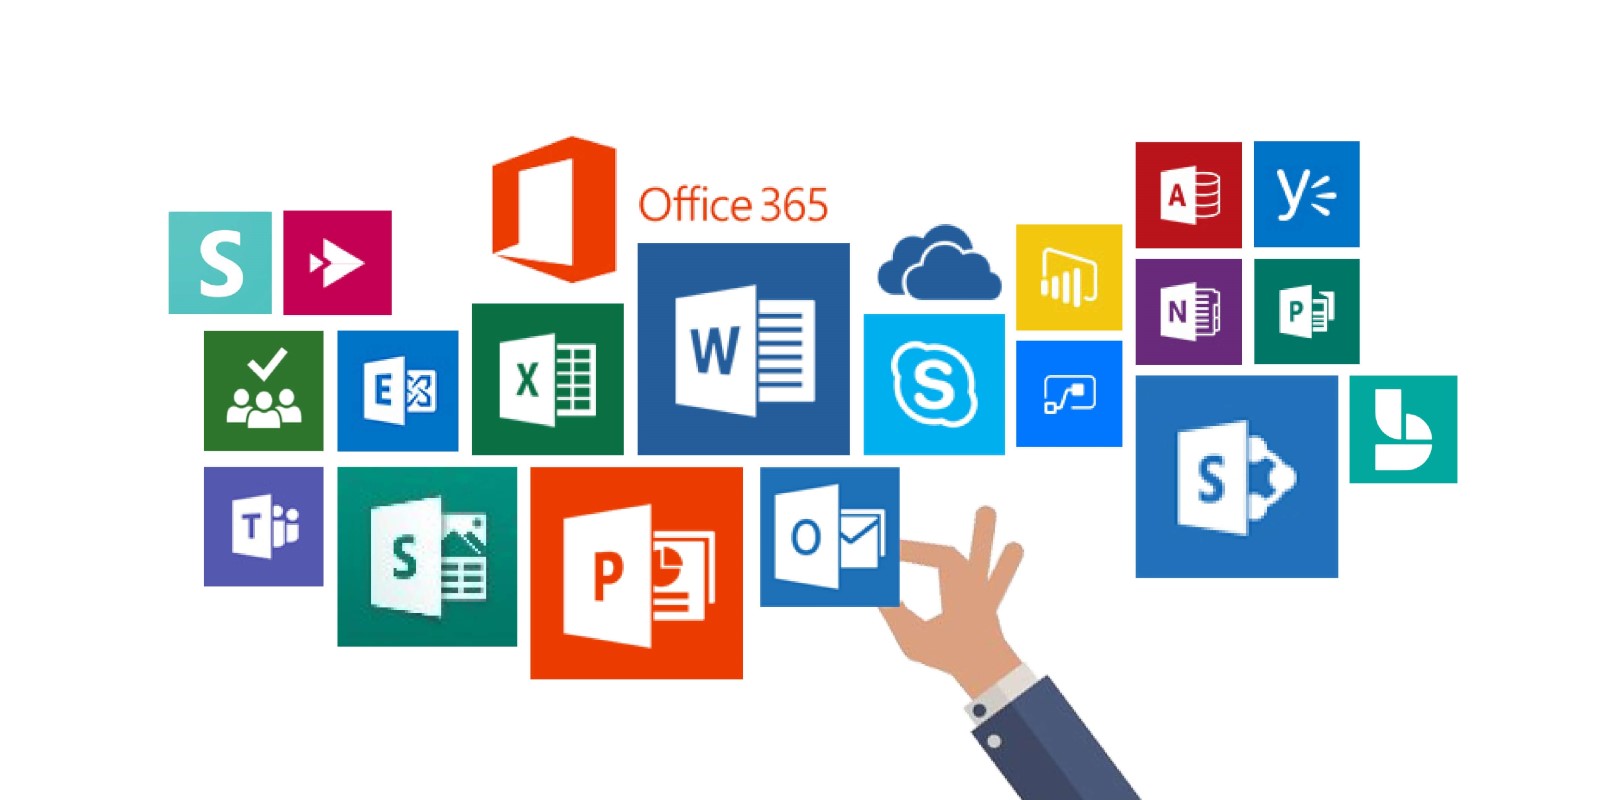 Phần mềm Microsoft Office - công cụ hỗ trợ công việc văn phòng.